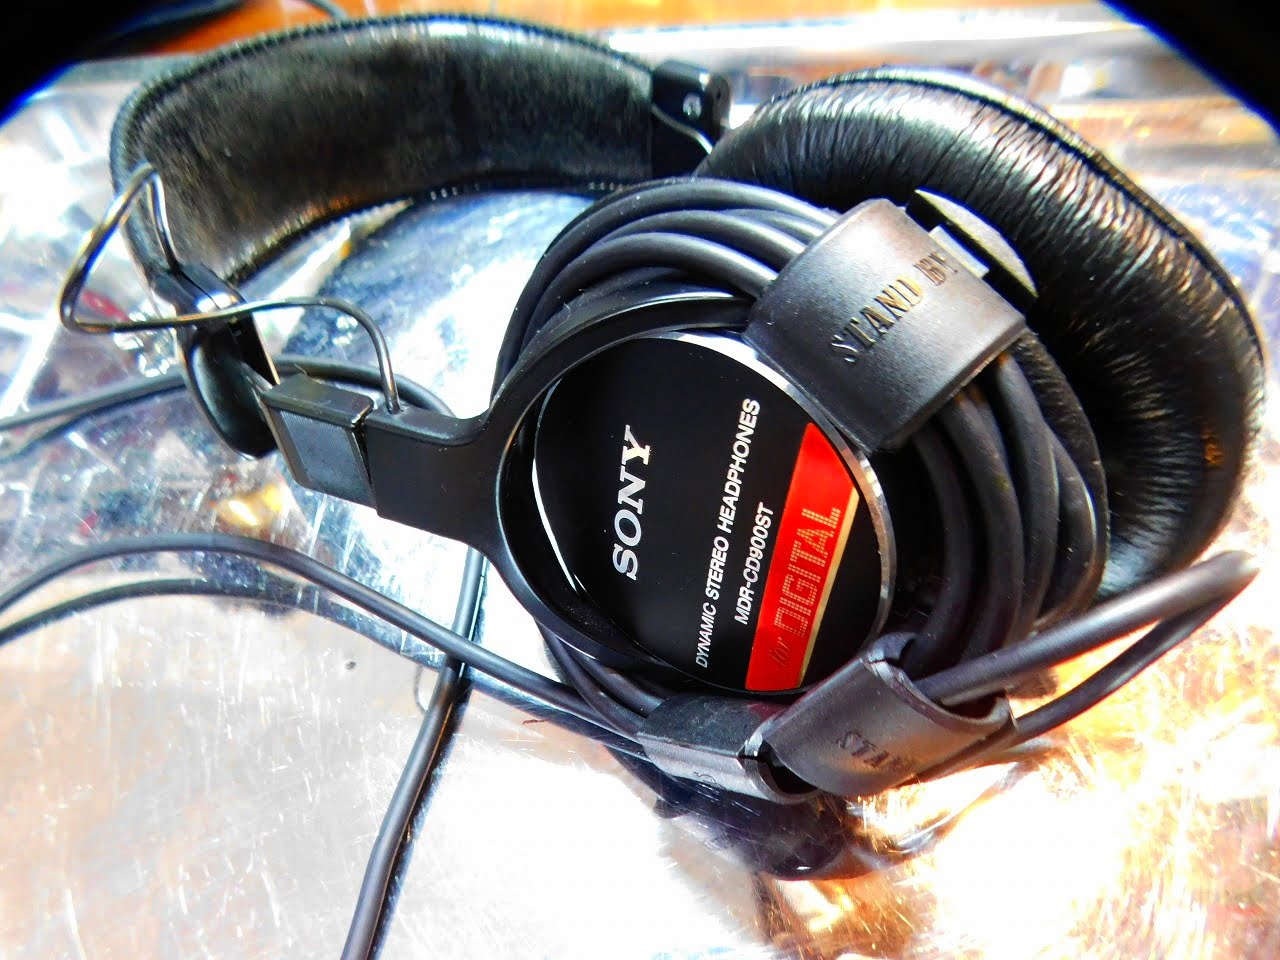 SONY製-“ヘッドホン”-“MDR-CD900ST″のイヤーパッド(Ear pads)交換のレビュー